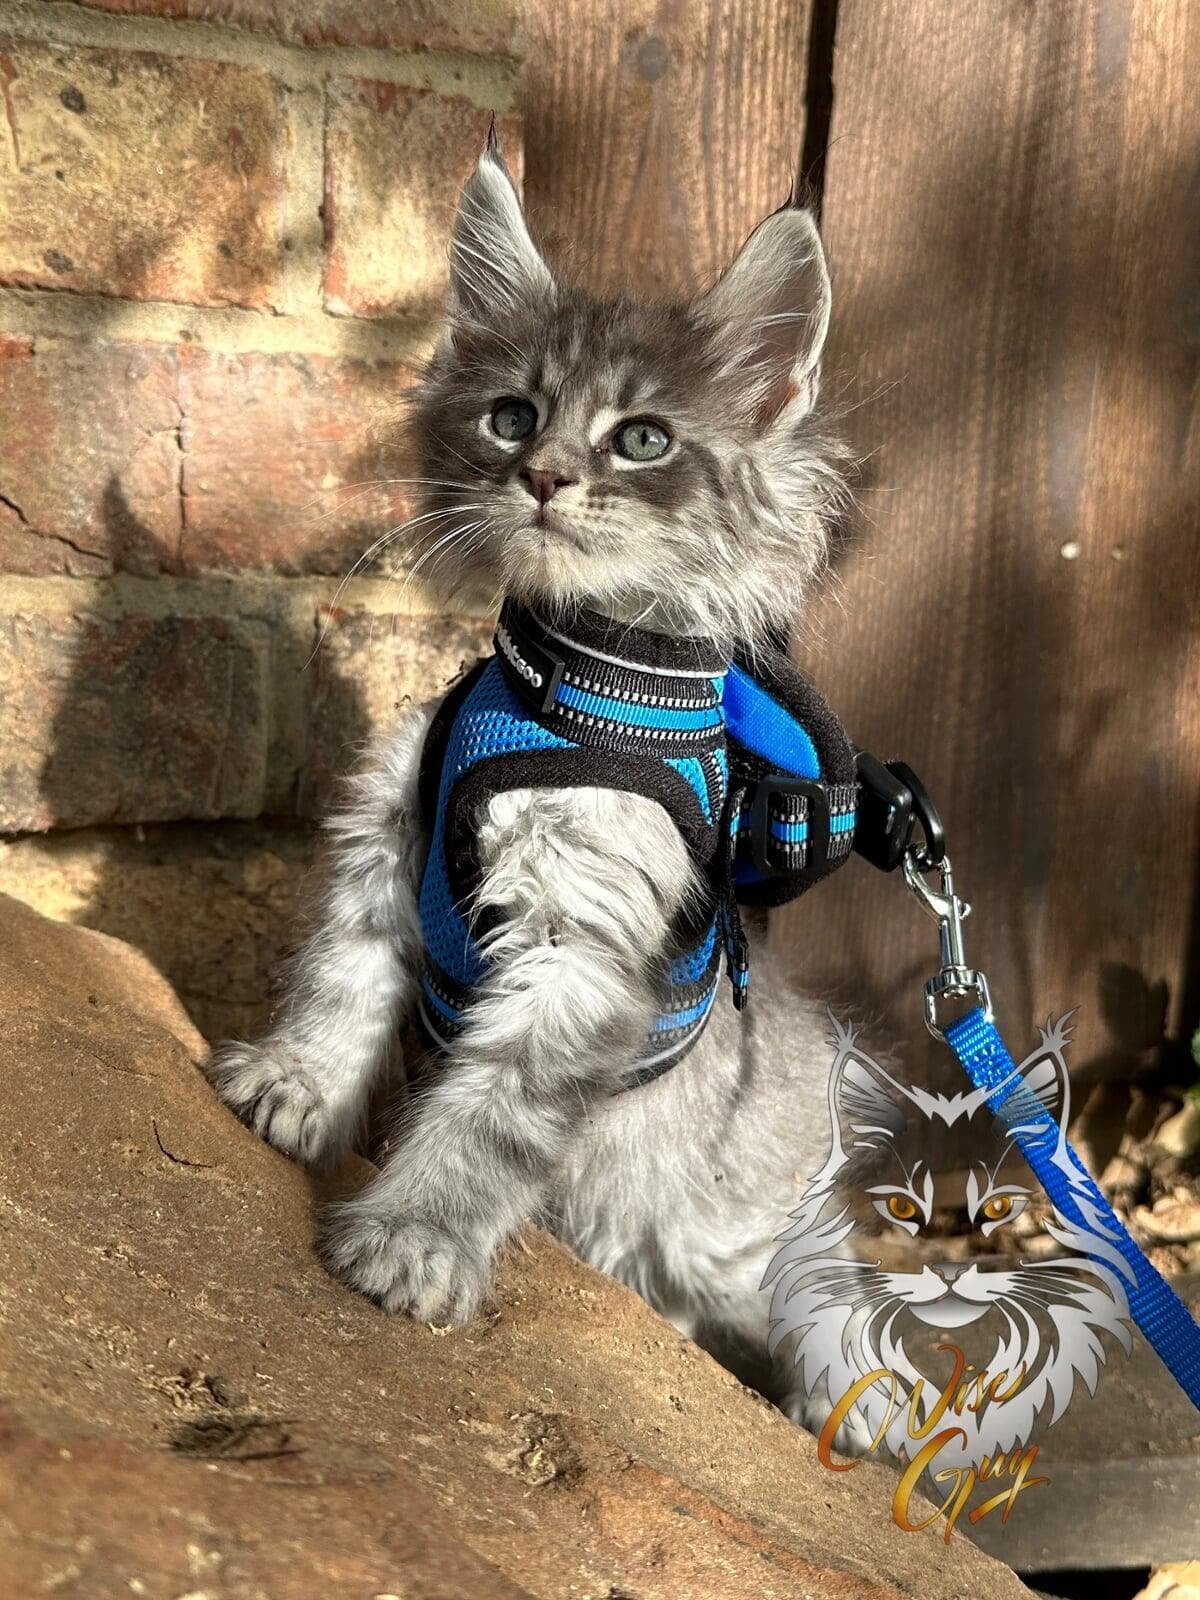 Kitten on leash exploring his world.